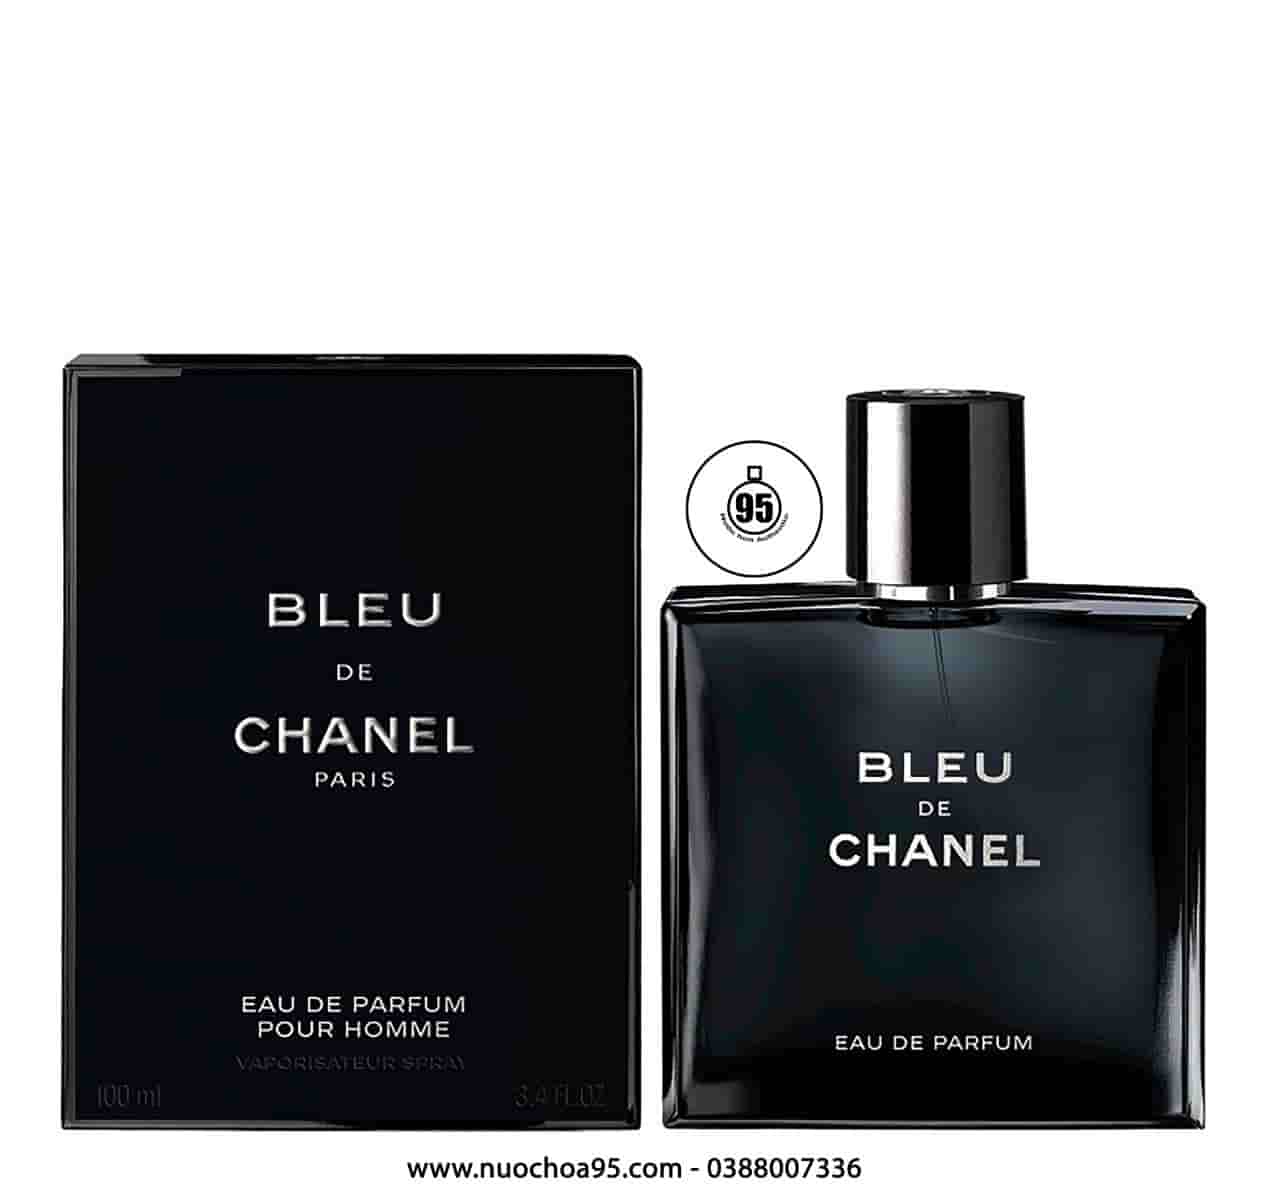 Fake vs Real Bleu de Chanel Perfume  YouTube